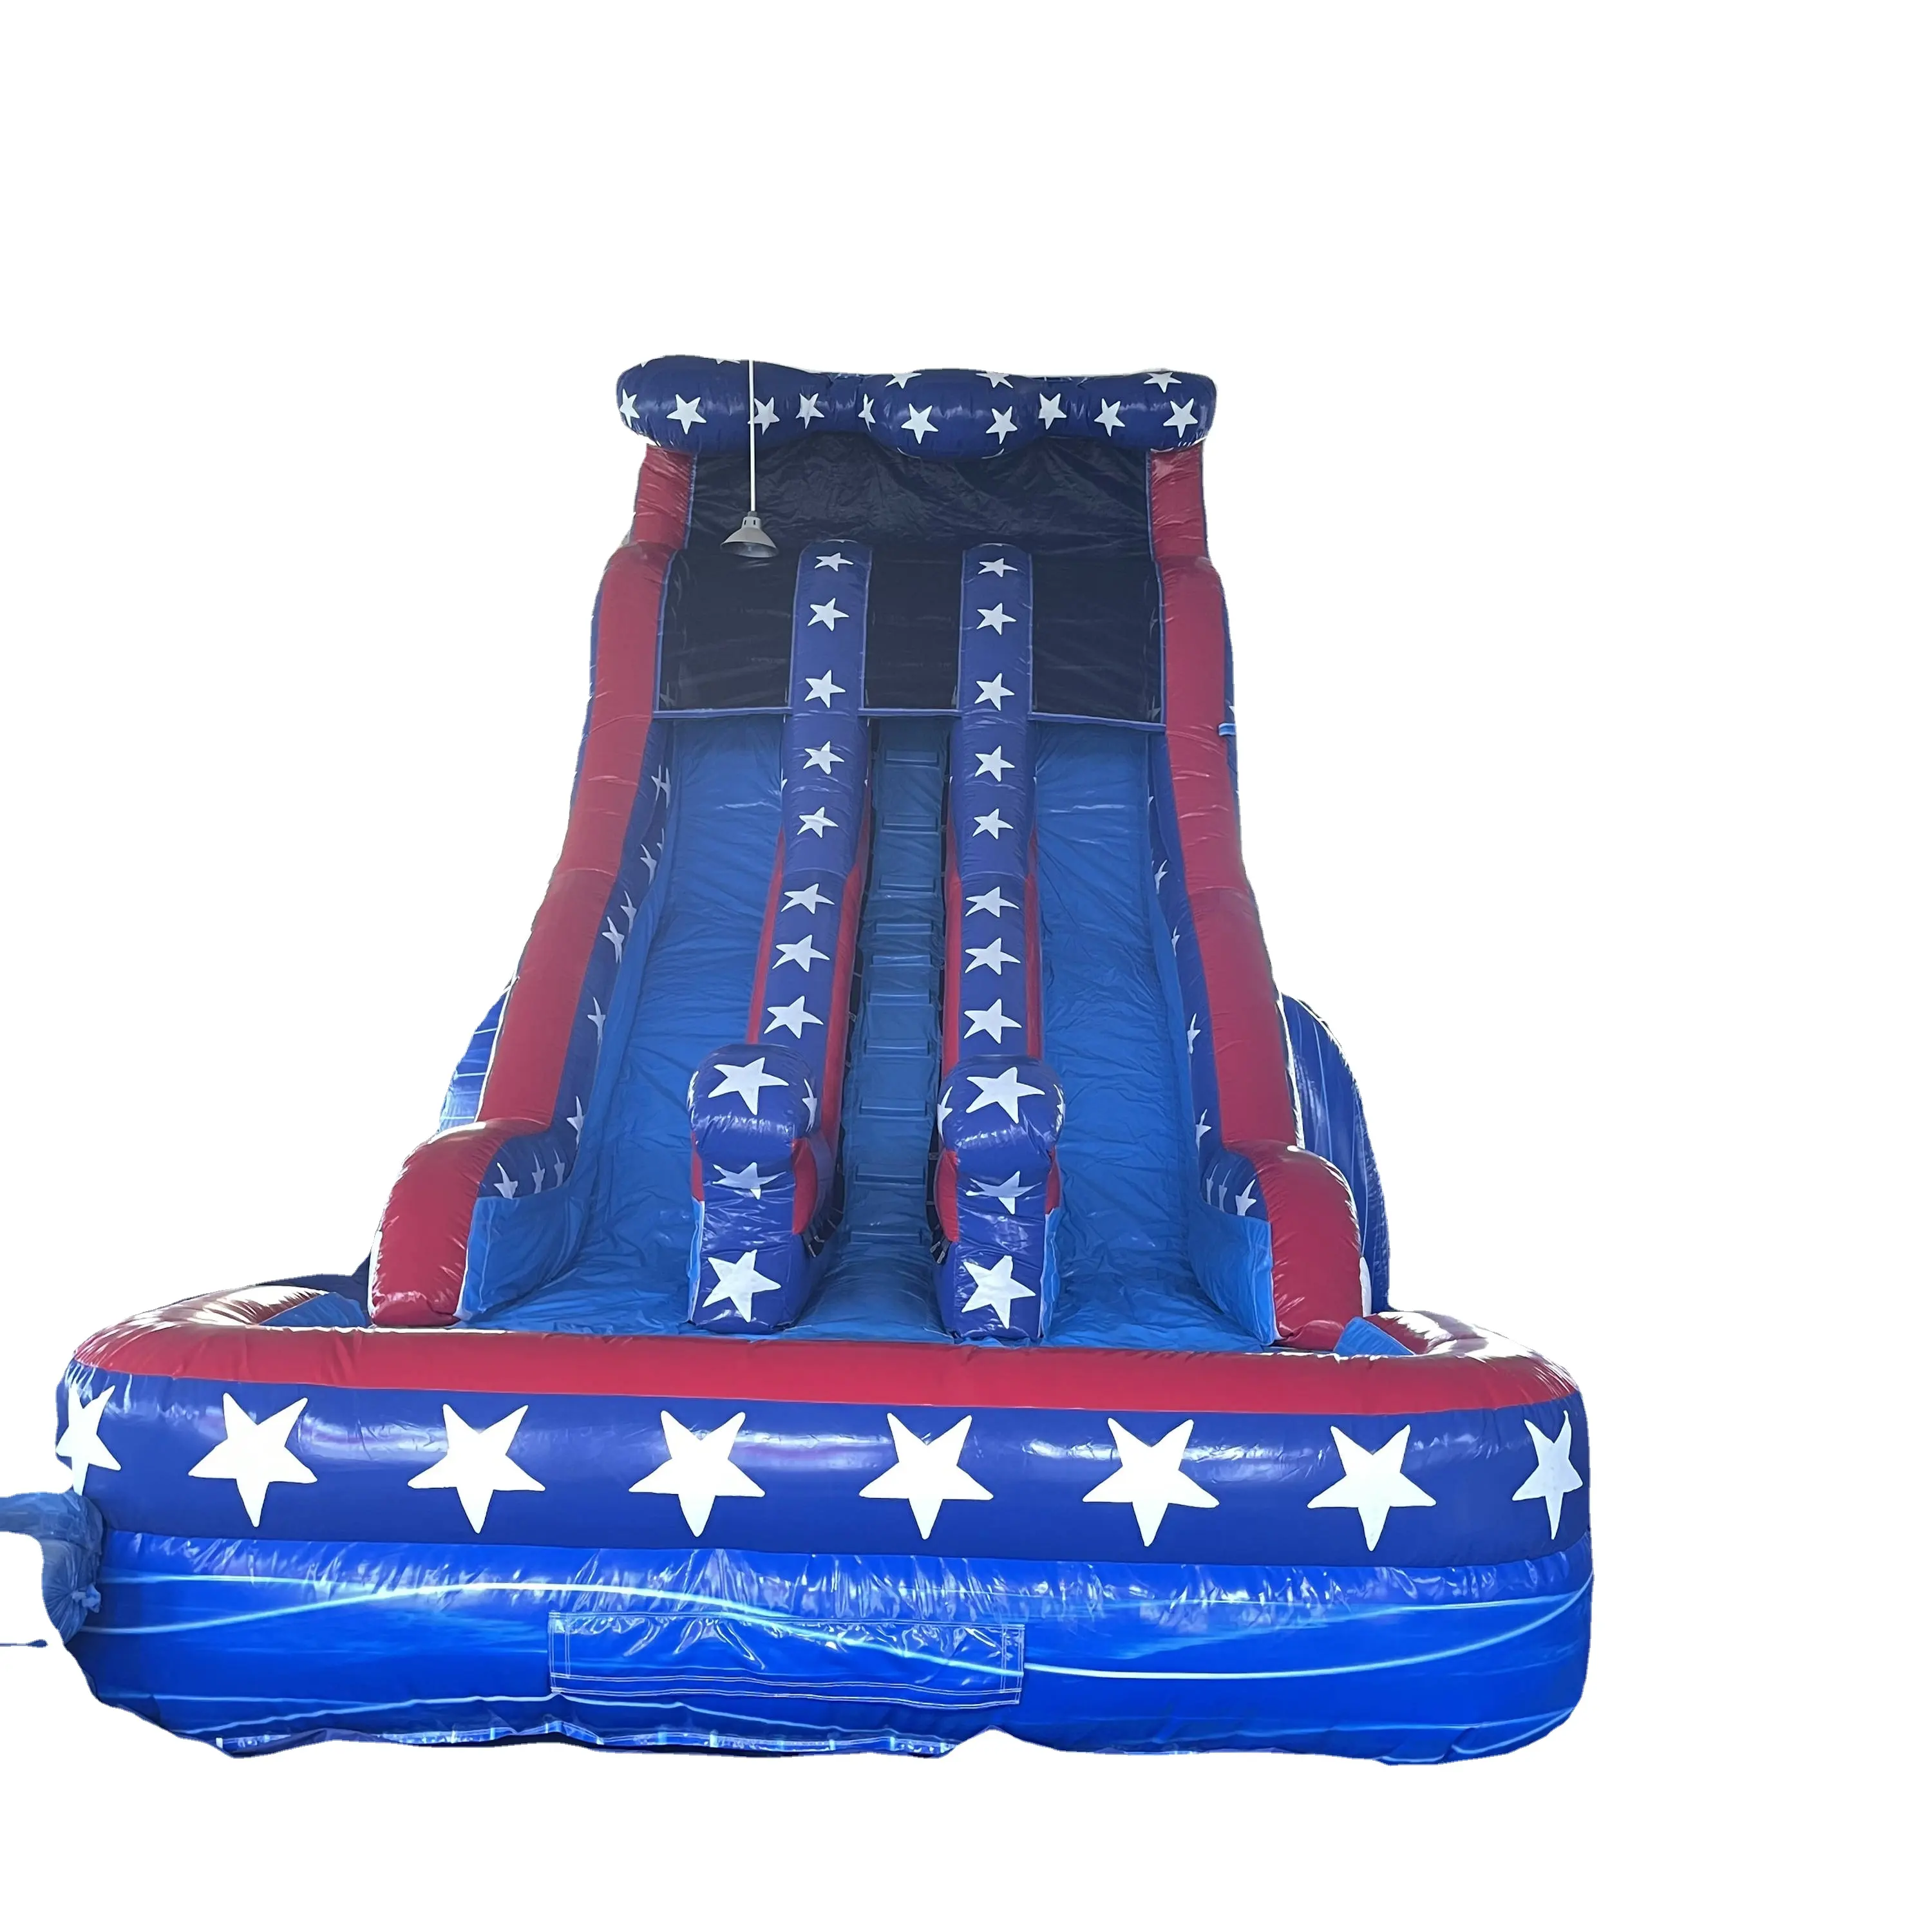 Tobogán de agua inflable gigante de 8m, tobogán de piscina combinado, parque acuático, tobogán de agua con bandera de EE. UU.